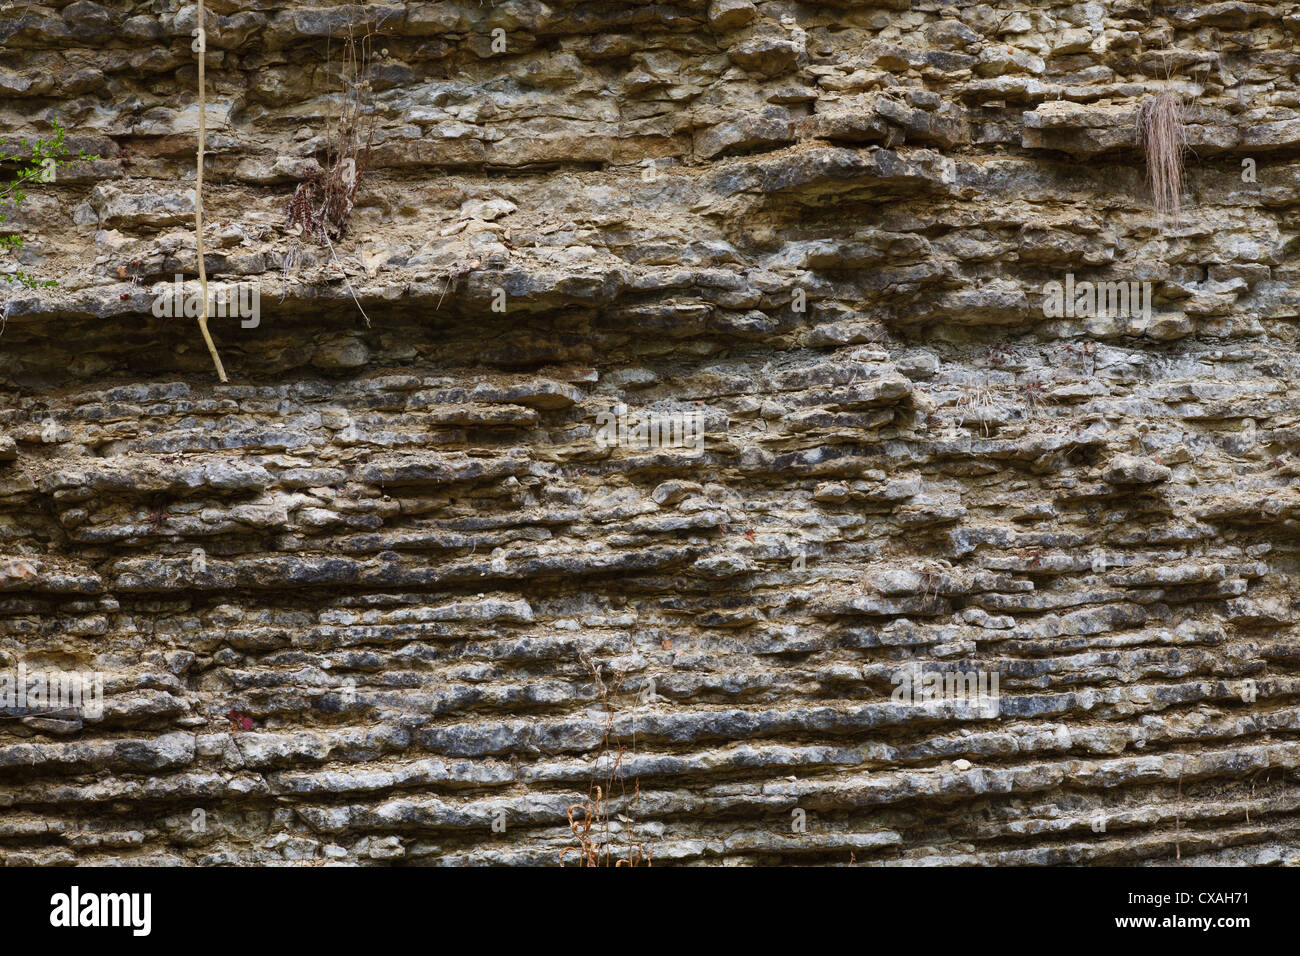 Silurian Kalkstein in einem Steinbruch on Wenlock Edge, zeigt geschichteten Bettwäsche. Knowle Steinbruch. Shropshire, England. Stockfoto